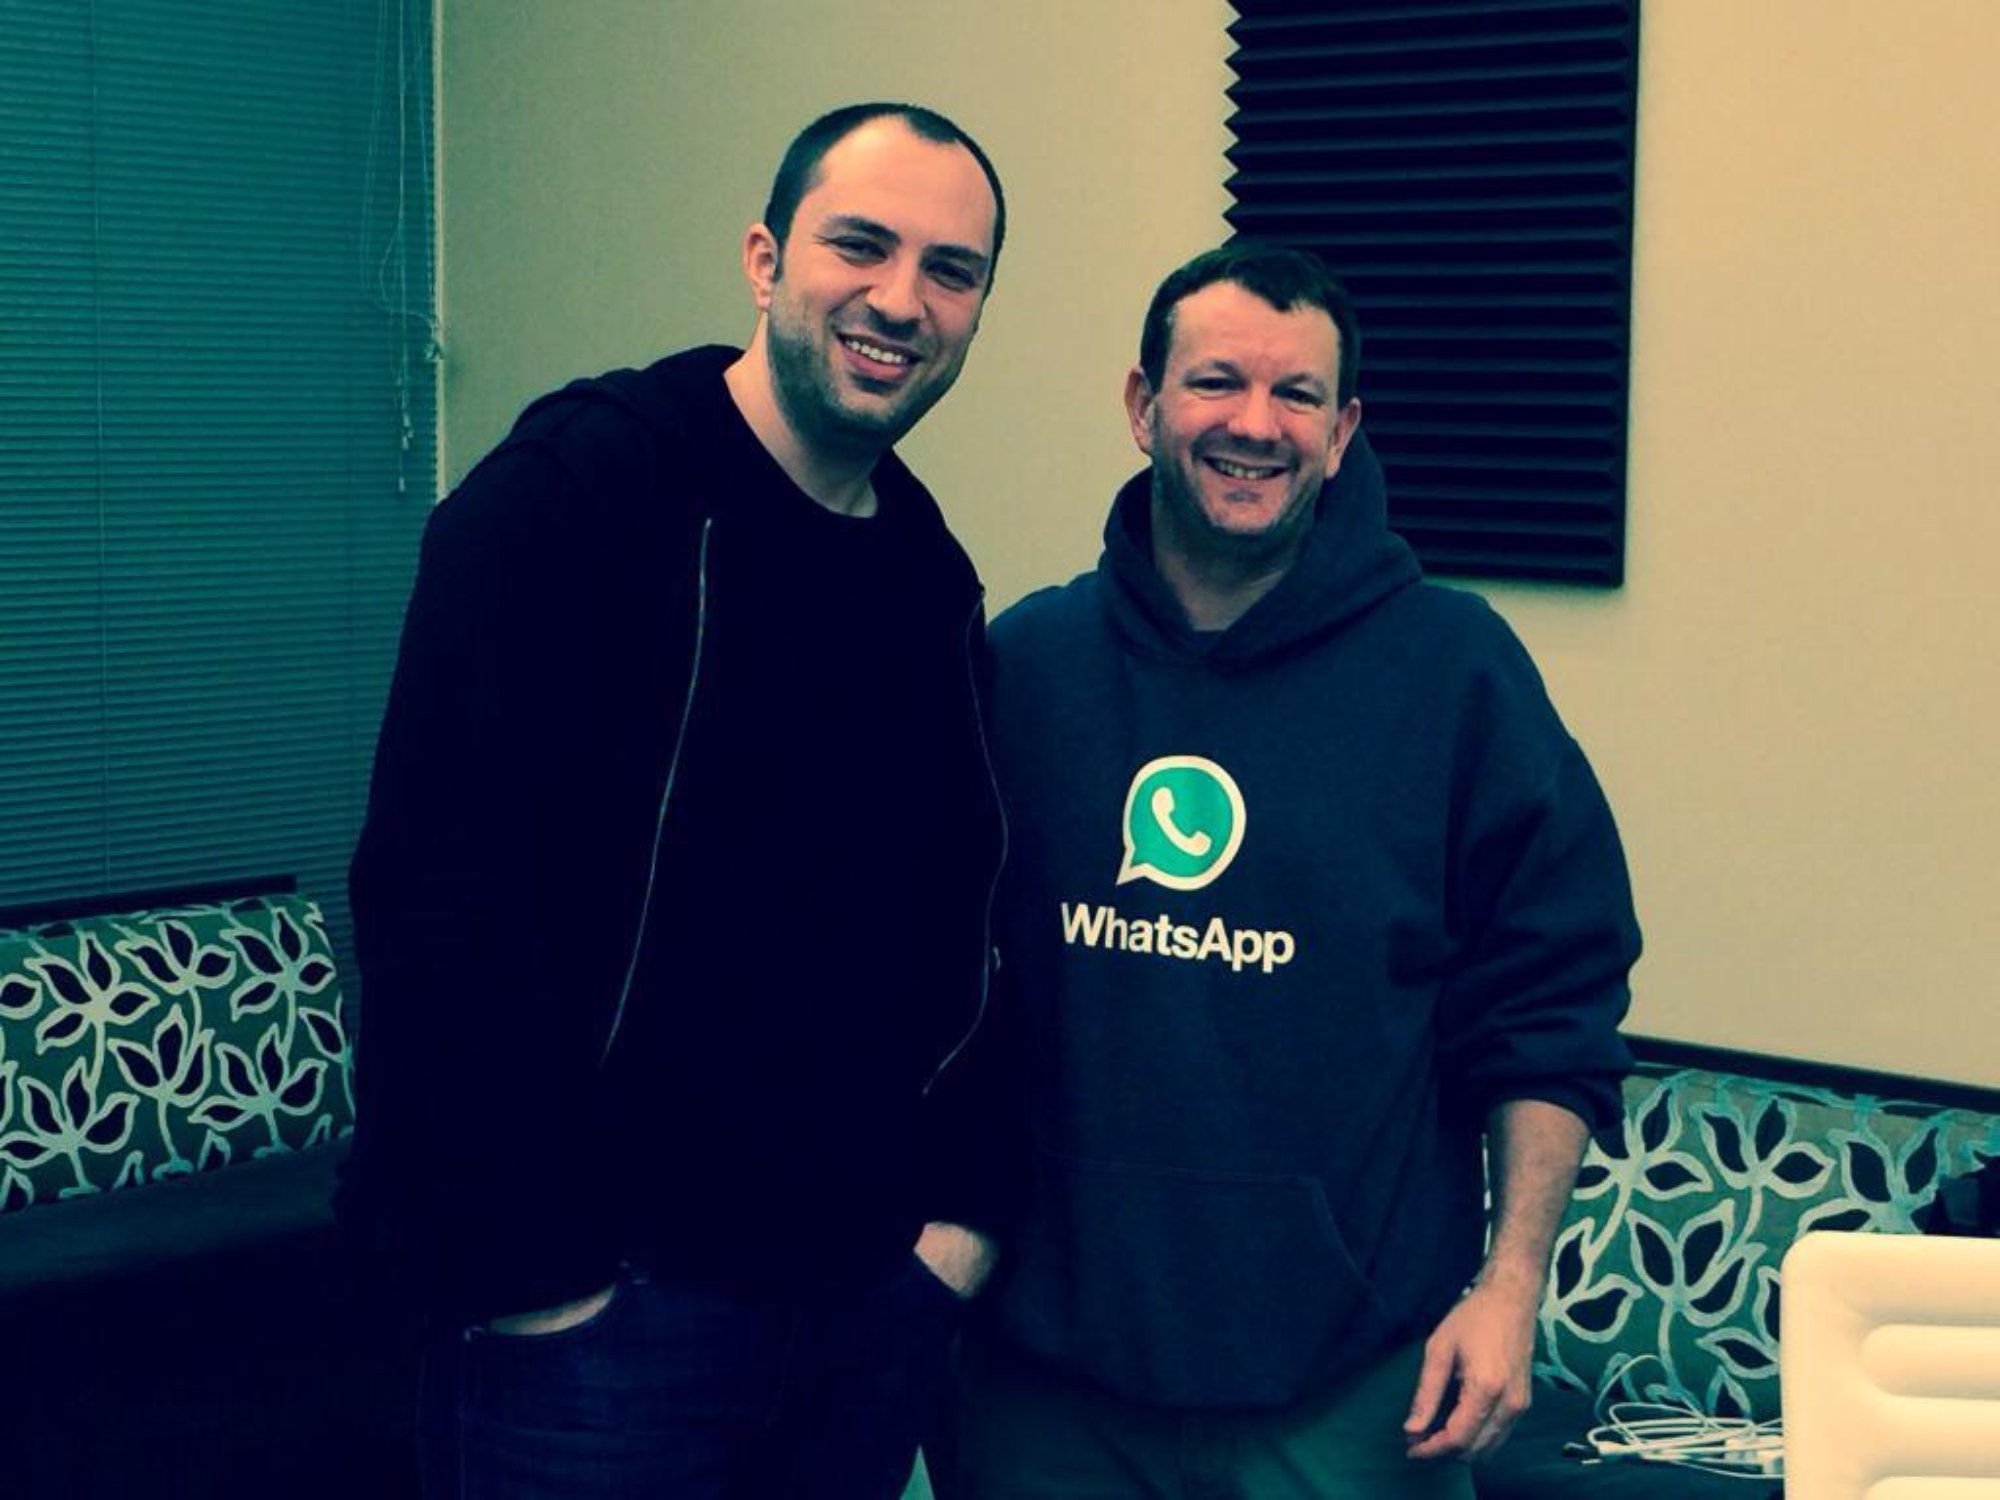 WhatsApp Co-Founder Brian Acton Bids Company Farewell